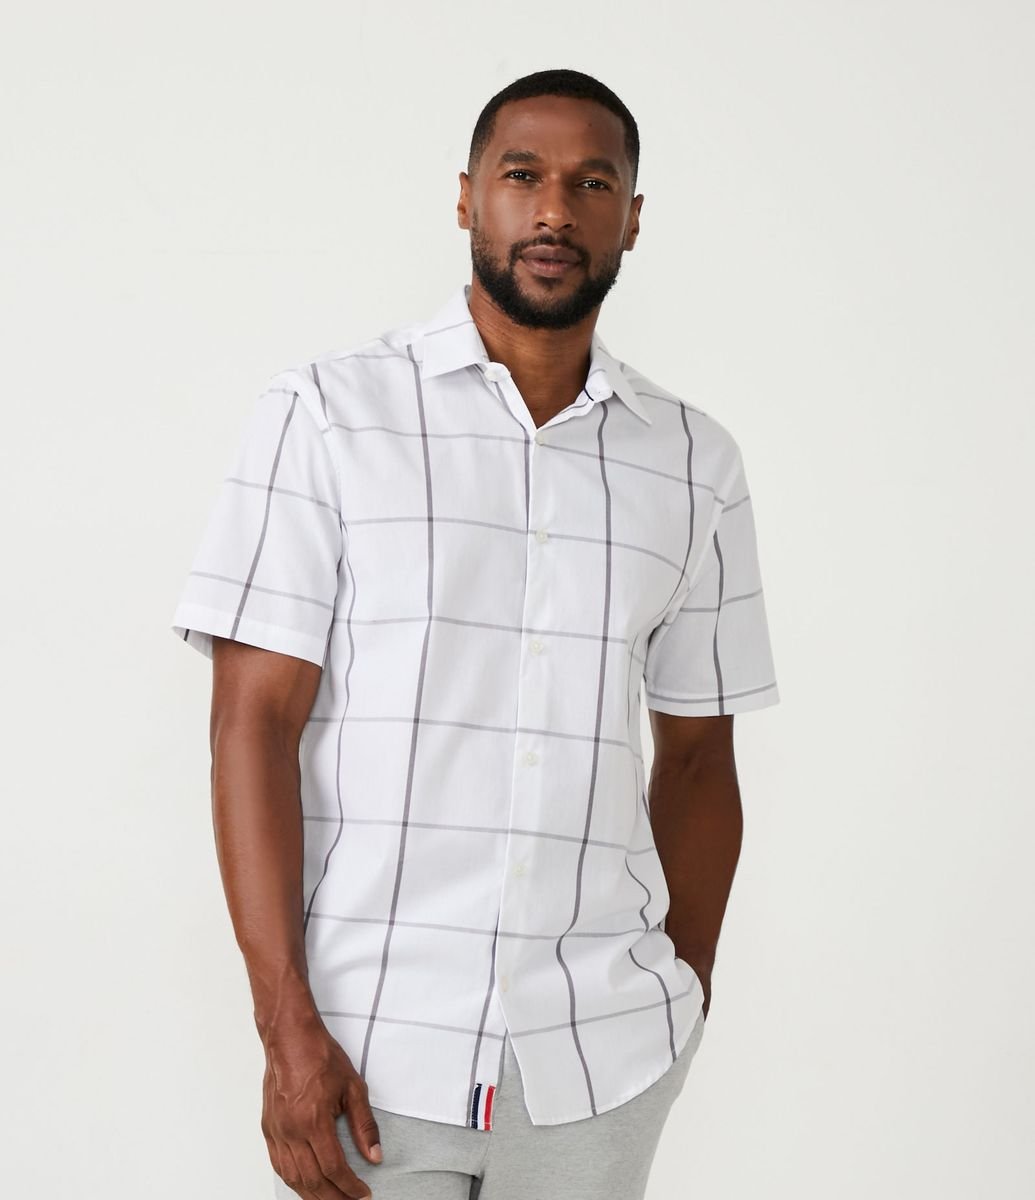 Camisa de algodão com estampa xadrez (Azure Terroso) - Homens